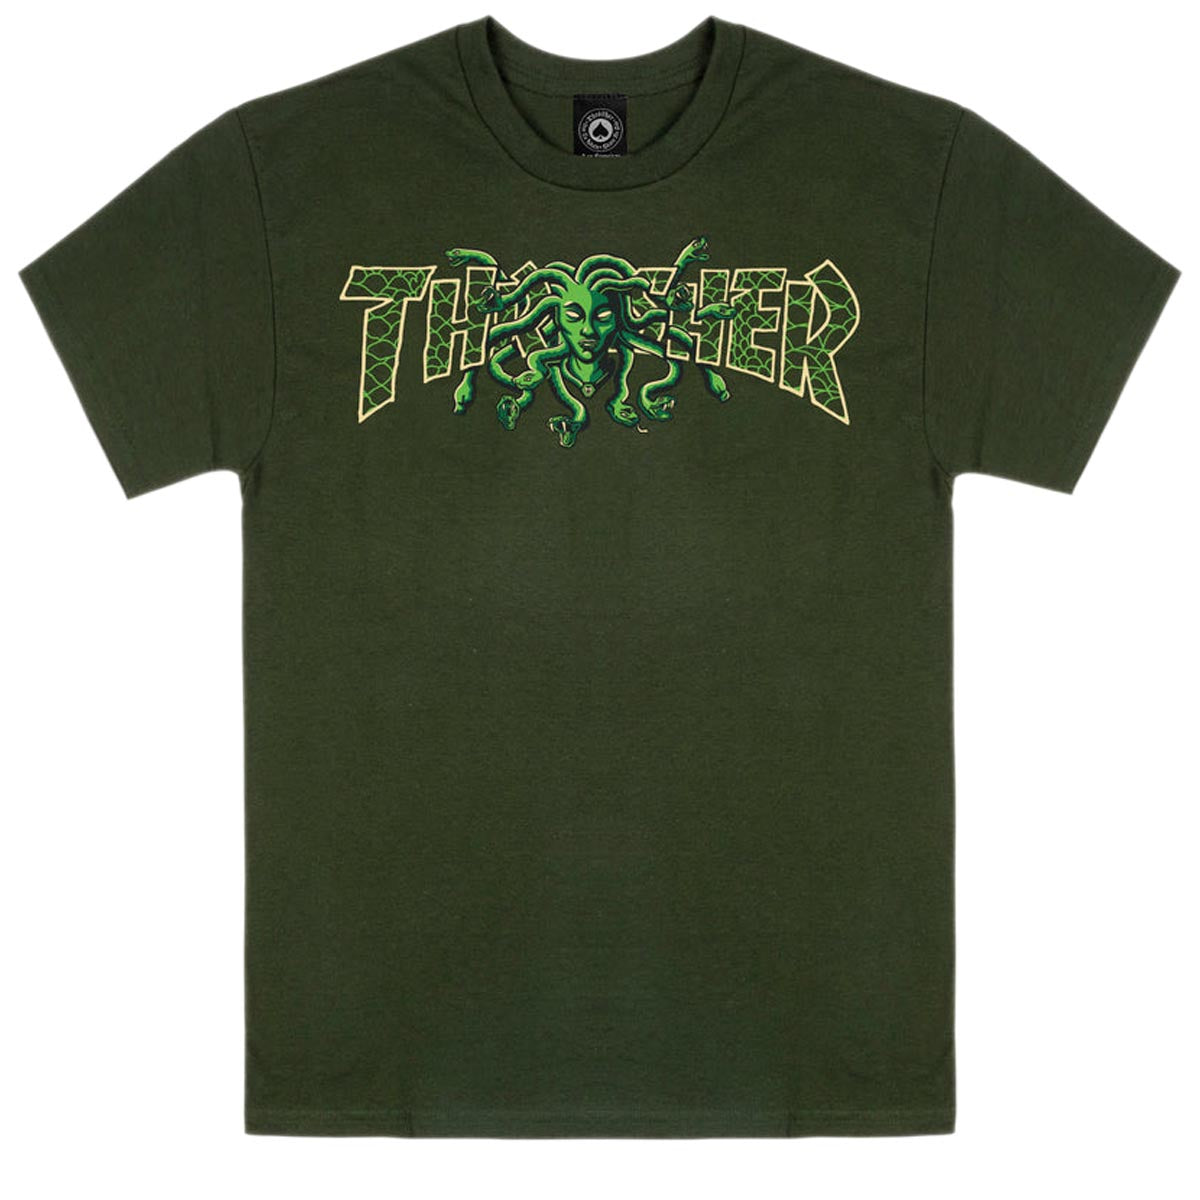 Thrasher Medusa T-Shirt - Forest Green image 1